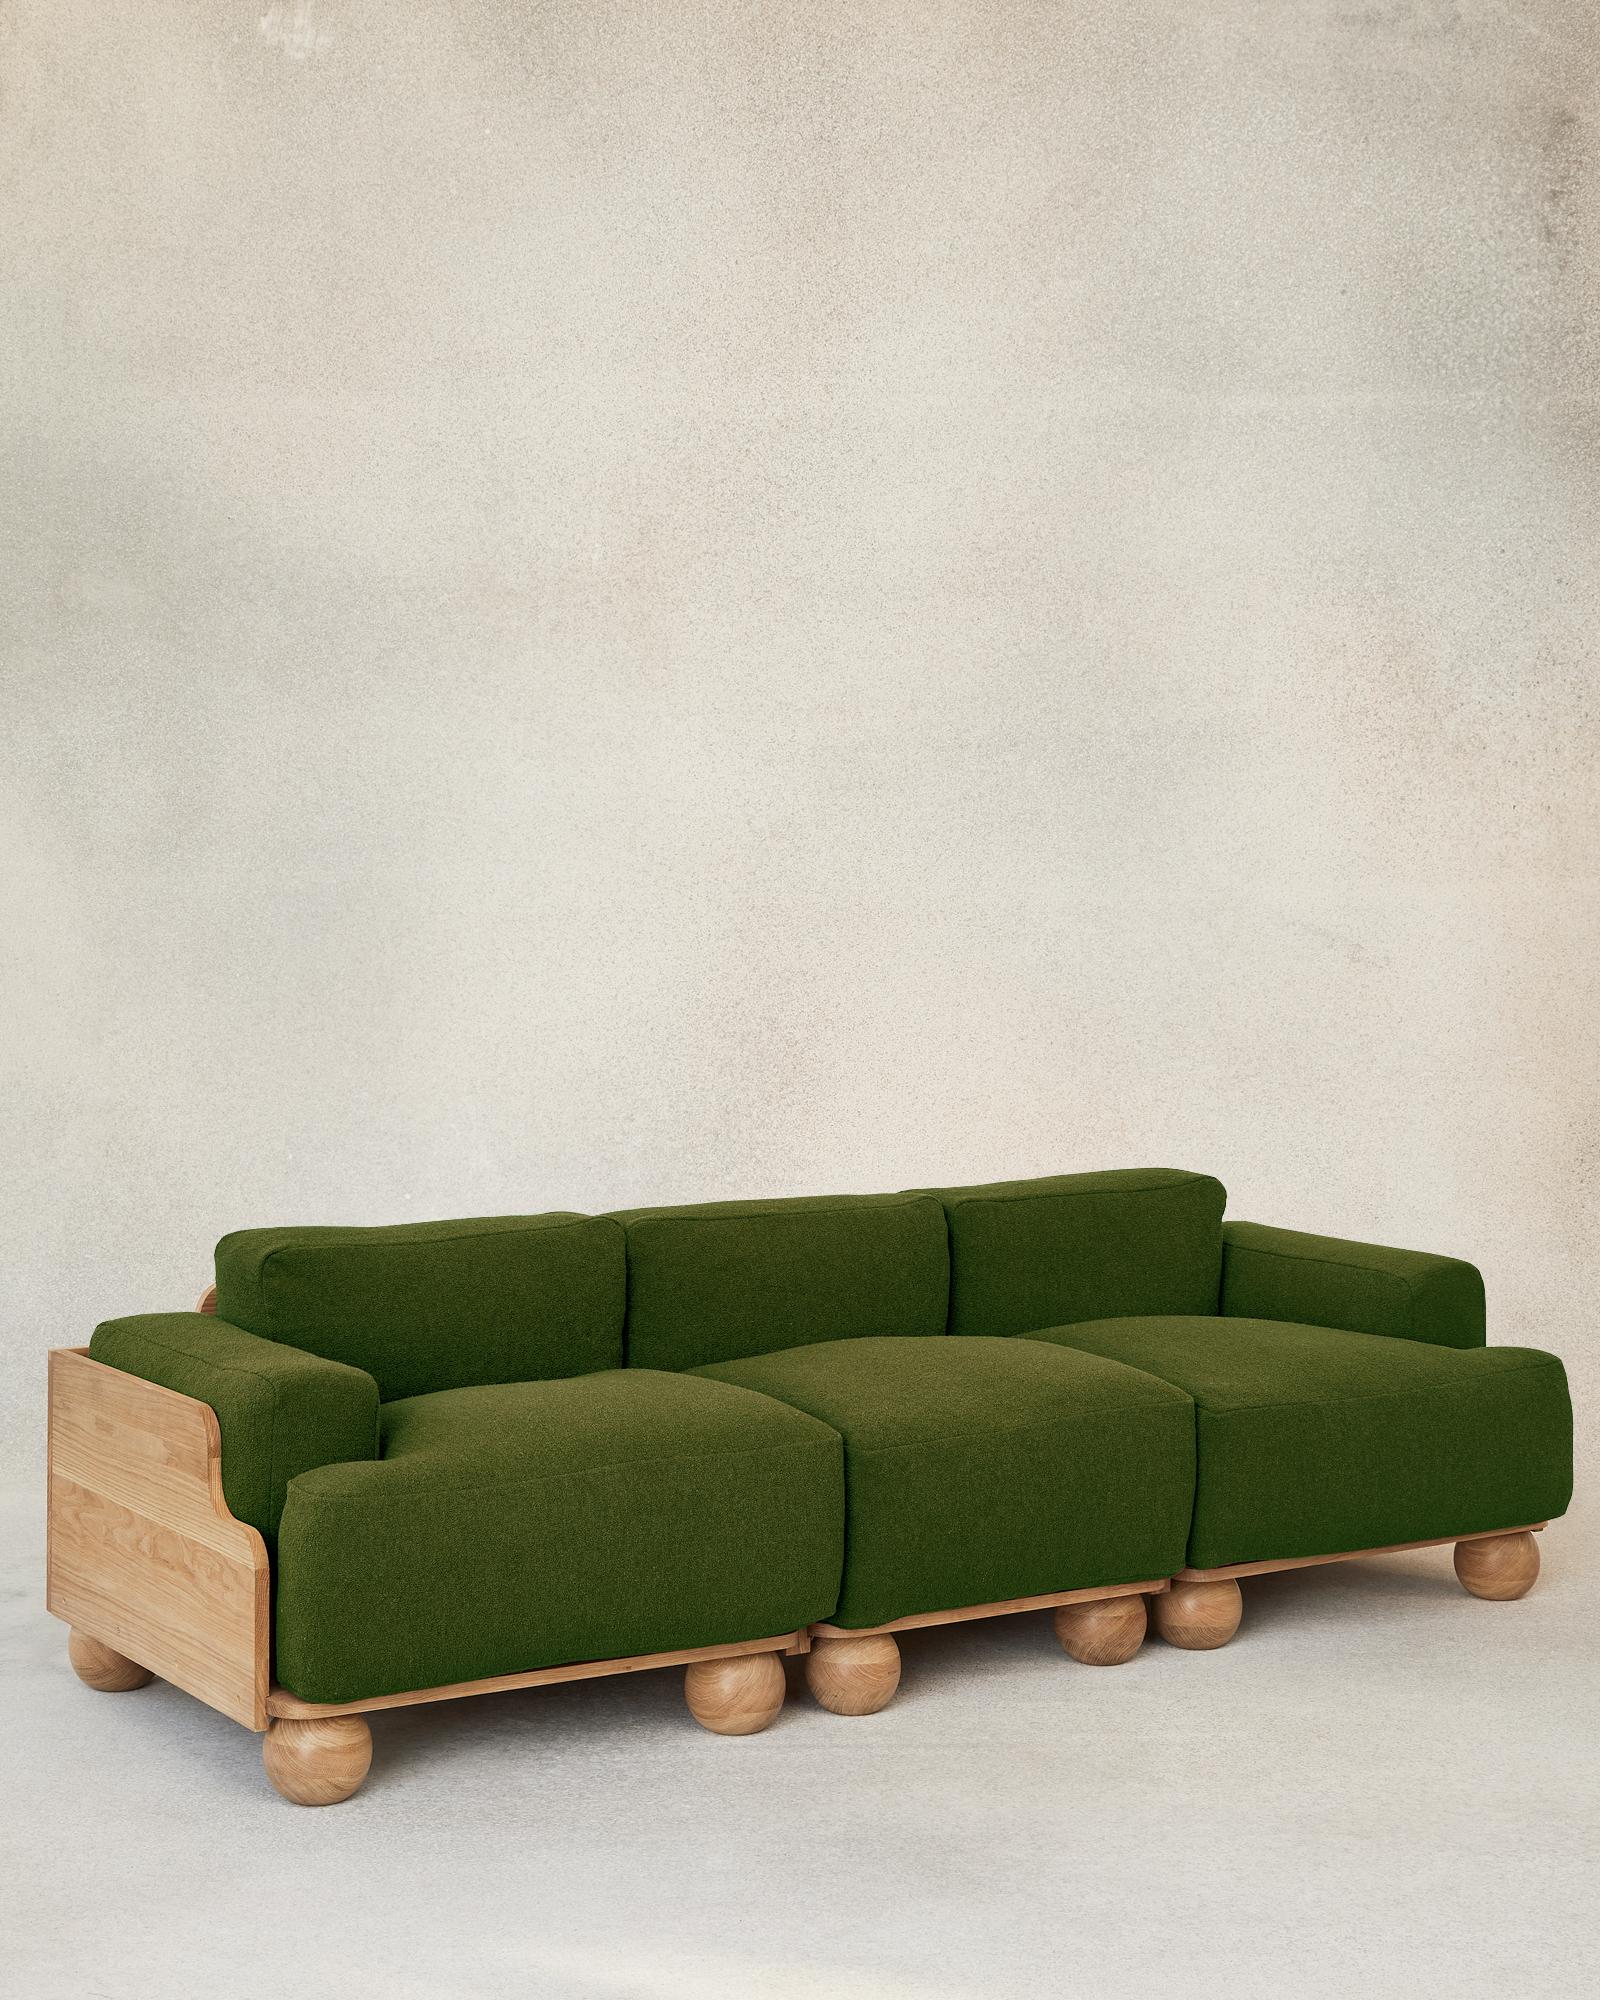 Das Cove-Sofa passt sich jeder Umgebung an und lädt dazu ein, den ganzen Tag darin zu sitzen. Die modulare Bauweise ermöglicht vielseitige Kombinationen und Längen von Zwei-, Drei- oder Mehrsitzern mit oder ohne Armlehnen. 

Ausgedehnte,